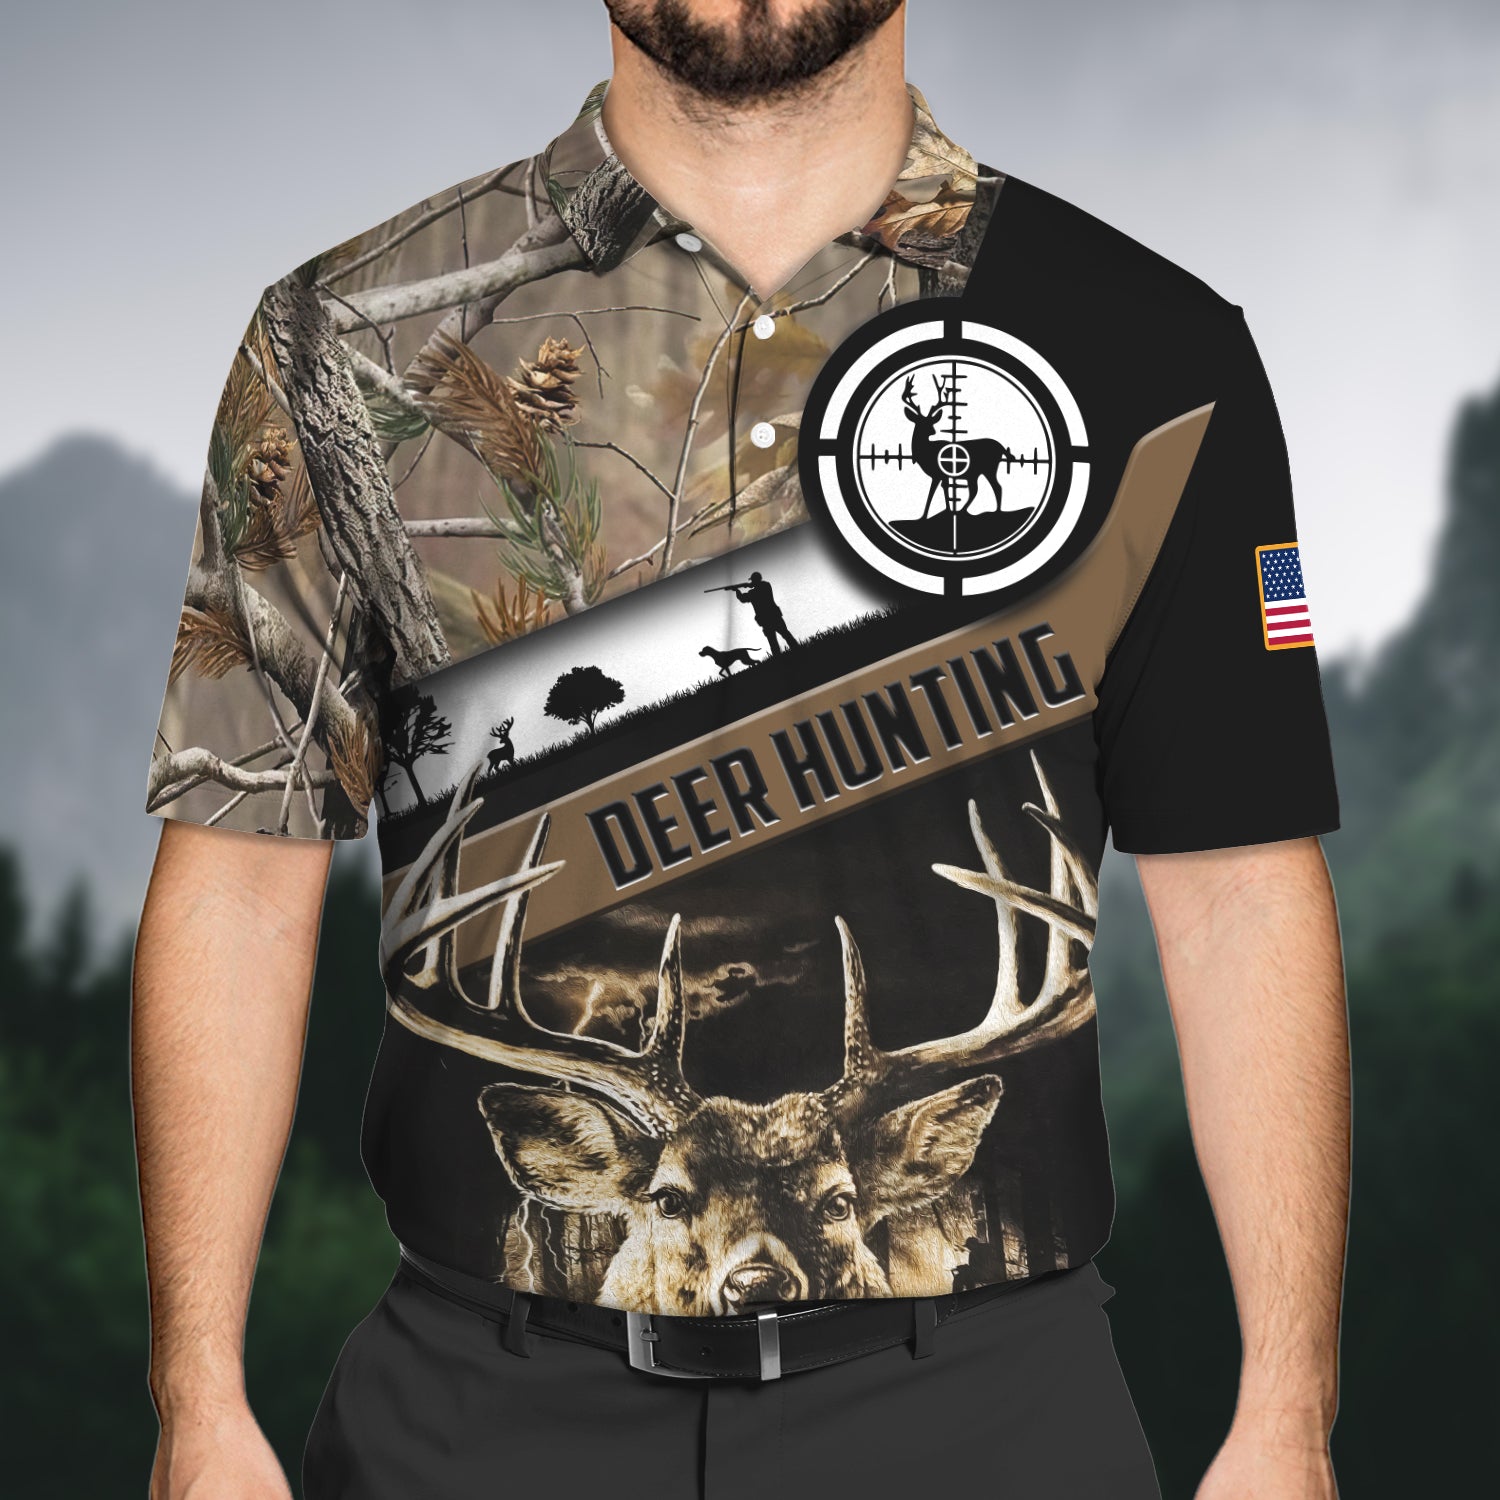 Deer Hunting - Hadn